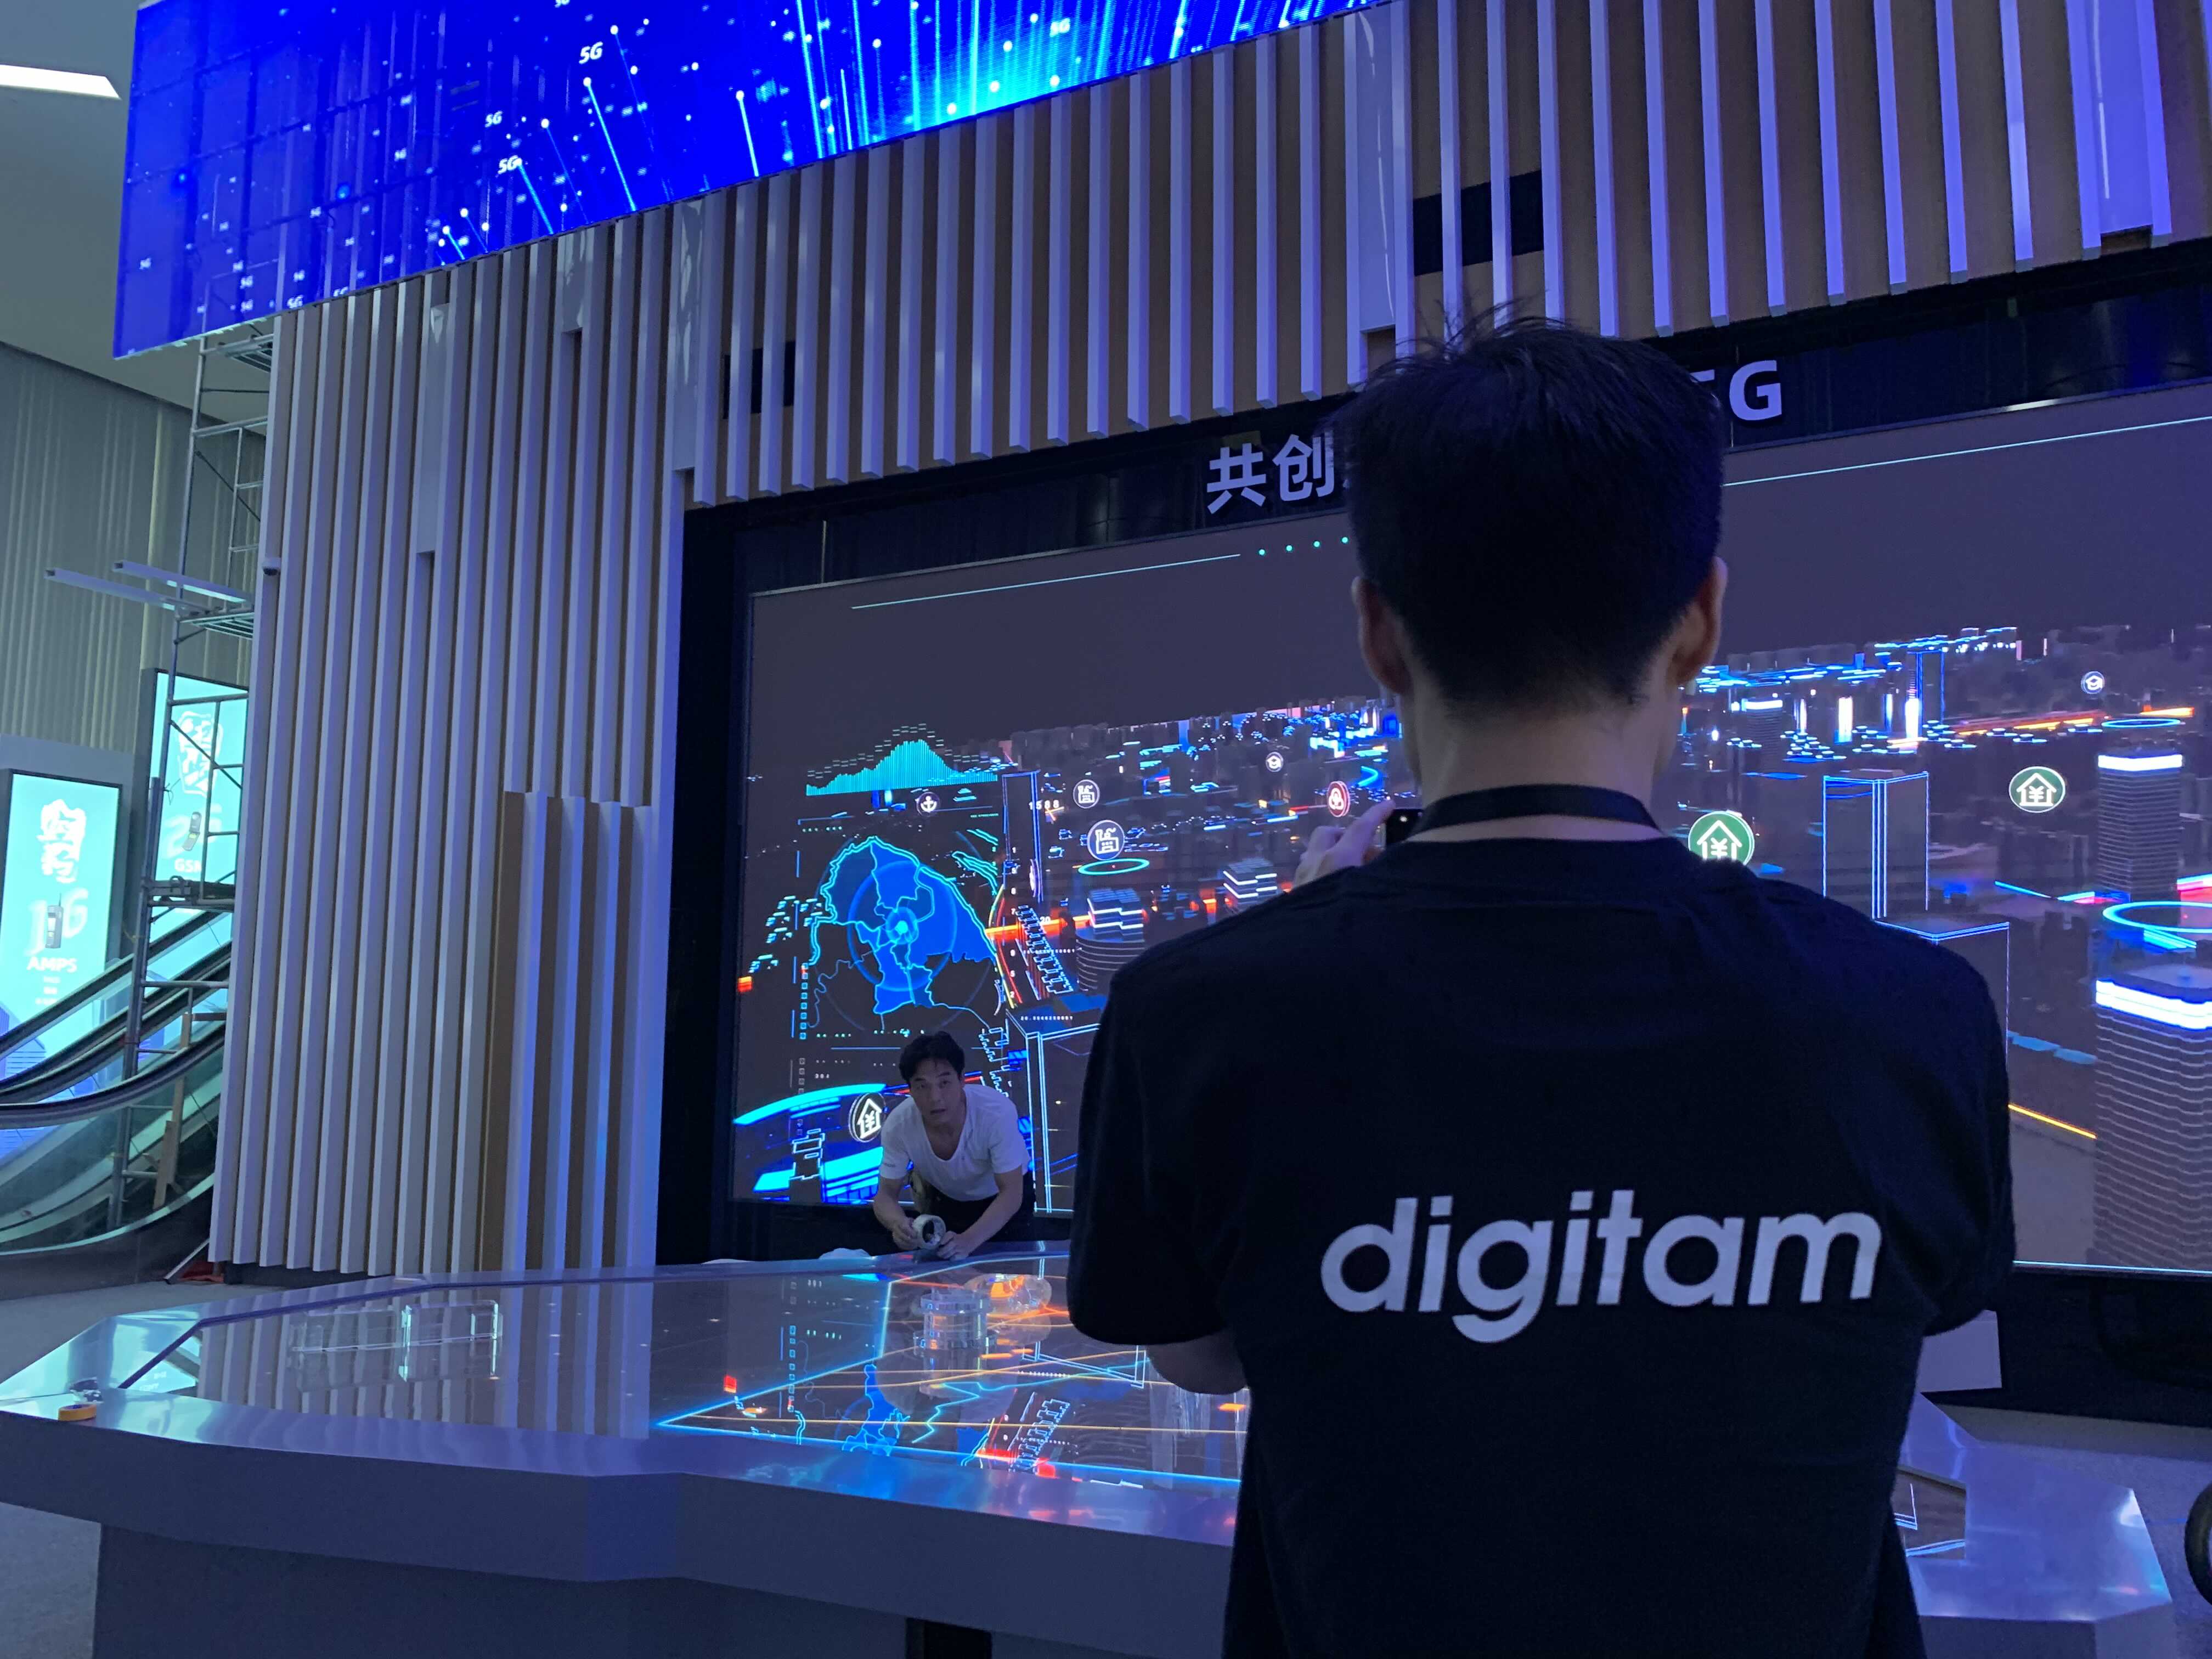 上海华为5G展厅  数字展厅  j9九游会-真人游戏第一品牌文化